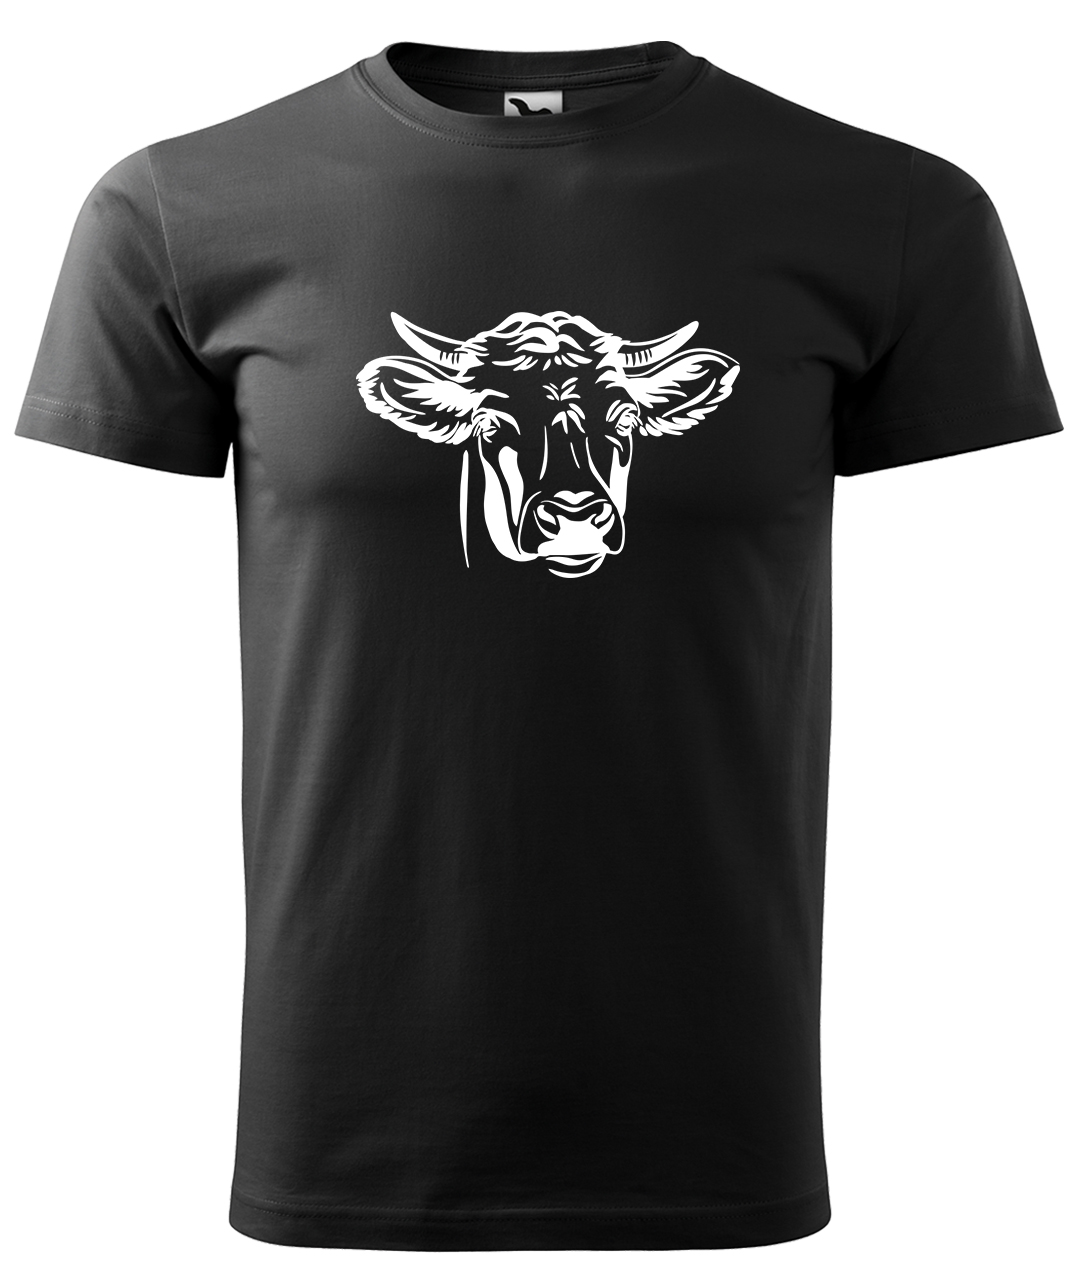 Dětské tričko s krávou - Hlava krávy Velikost: 4 roky / 110 cm, Barva: Černá (01), Délka rukávu: Krátký rukáv